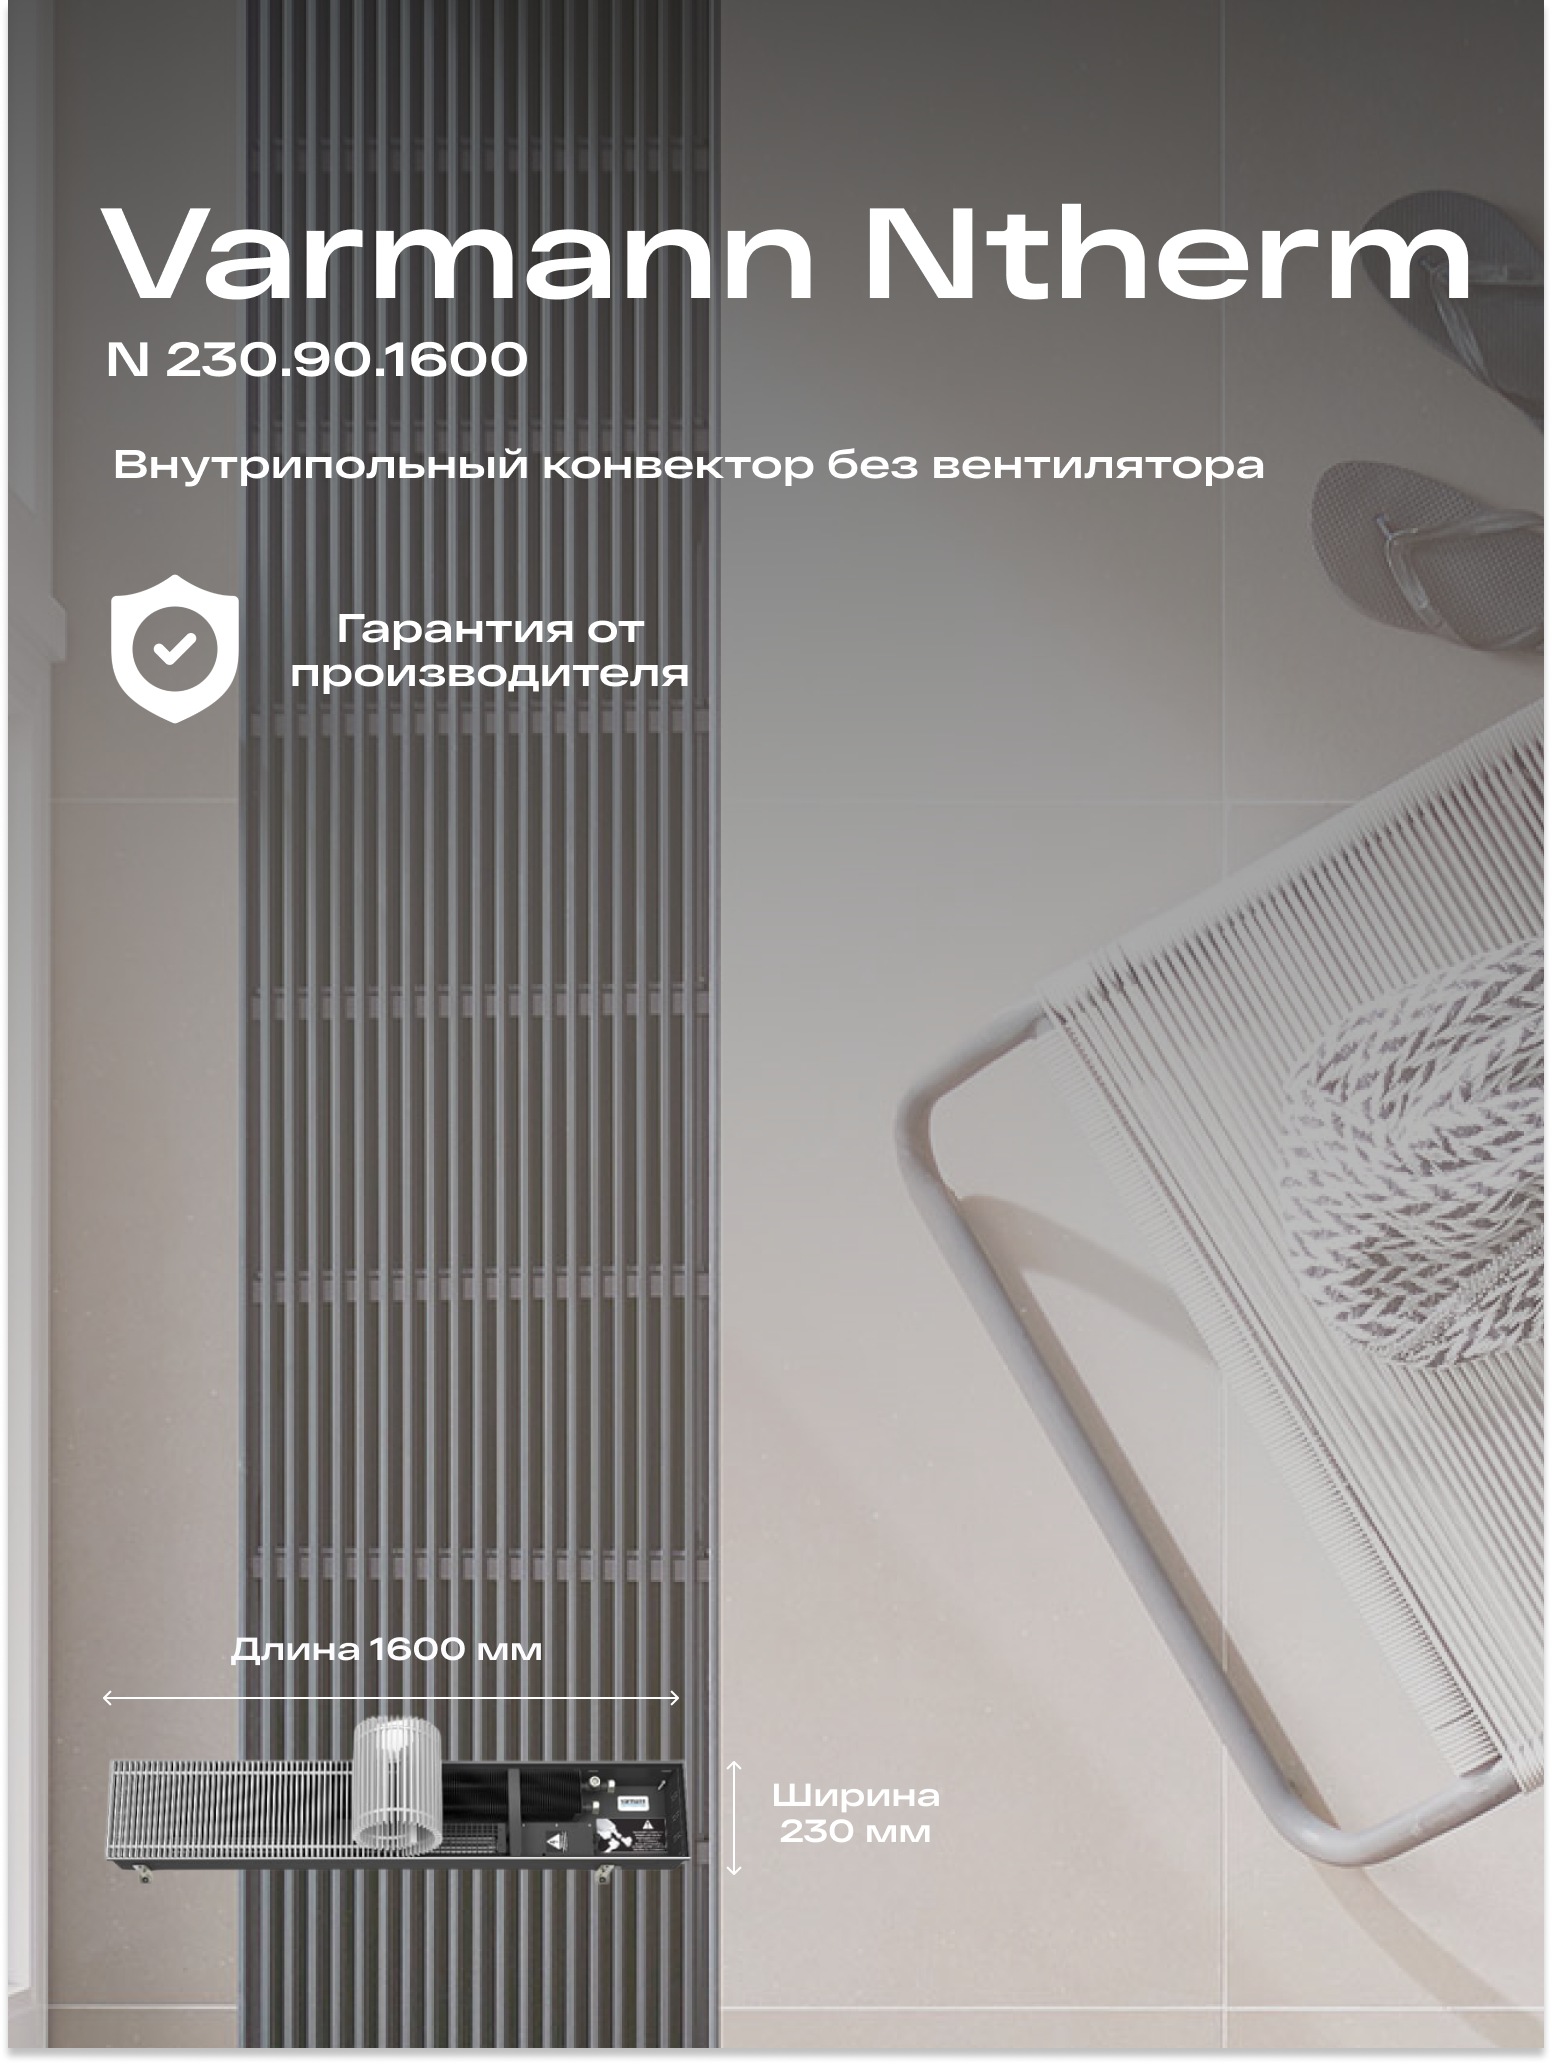 Встраиваемый конвектор внутрипольный водяной Varmann Ntherm 230.90.1600